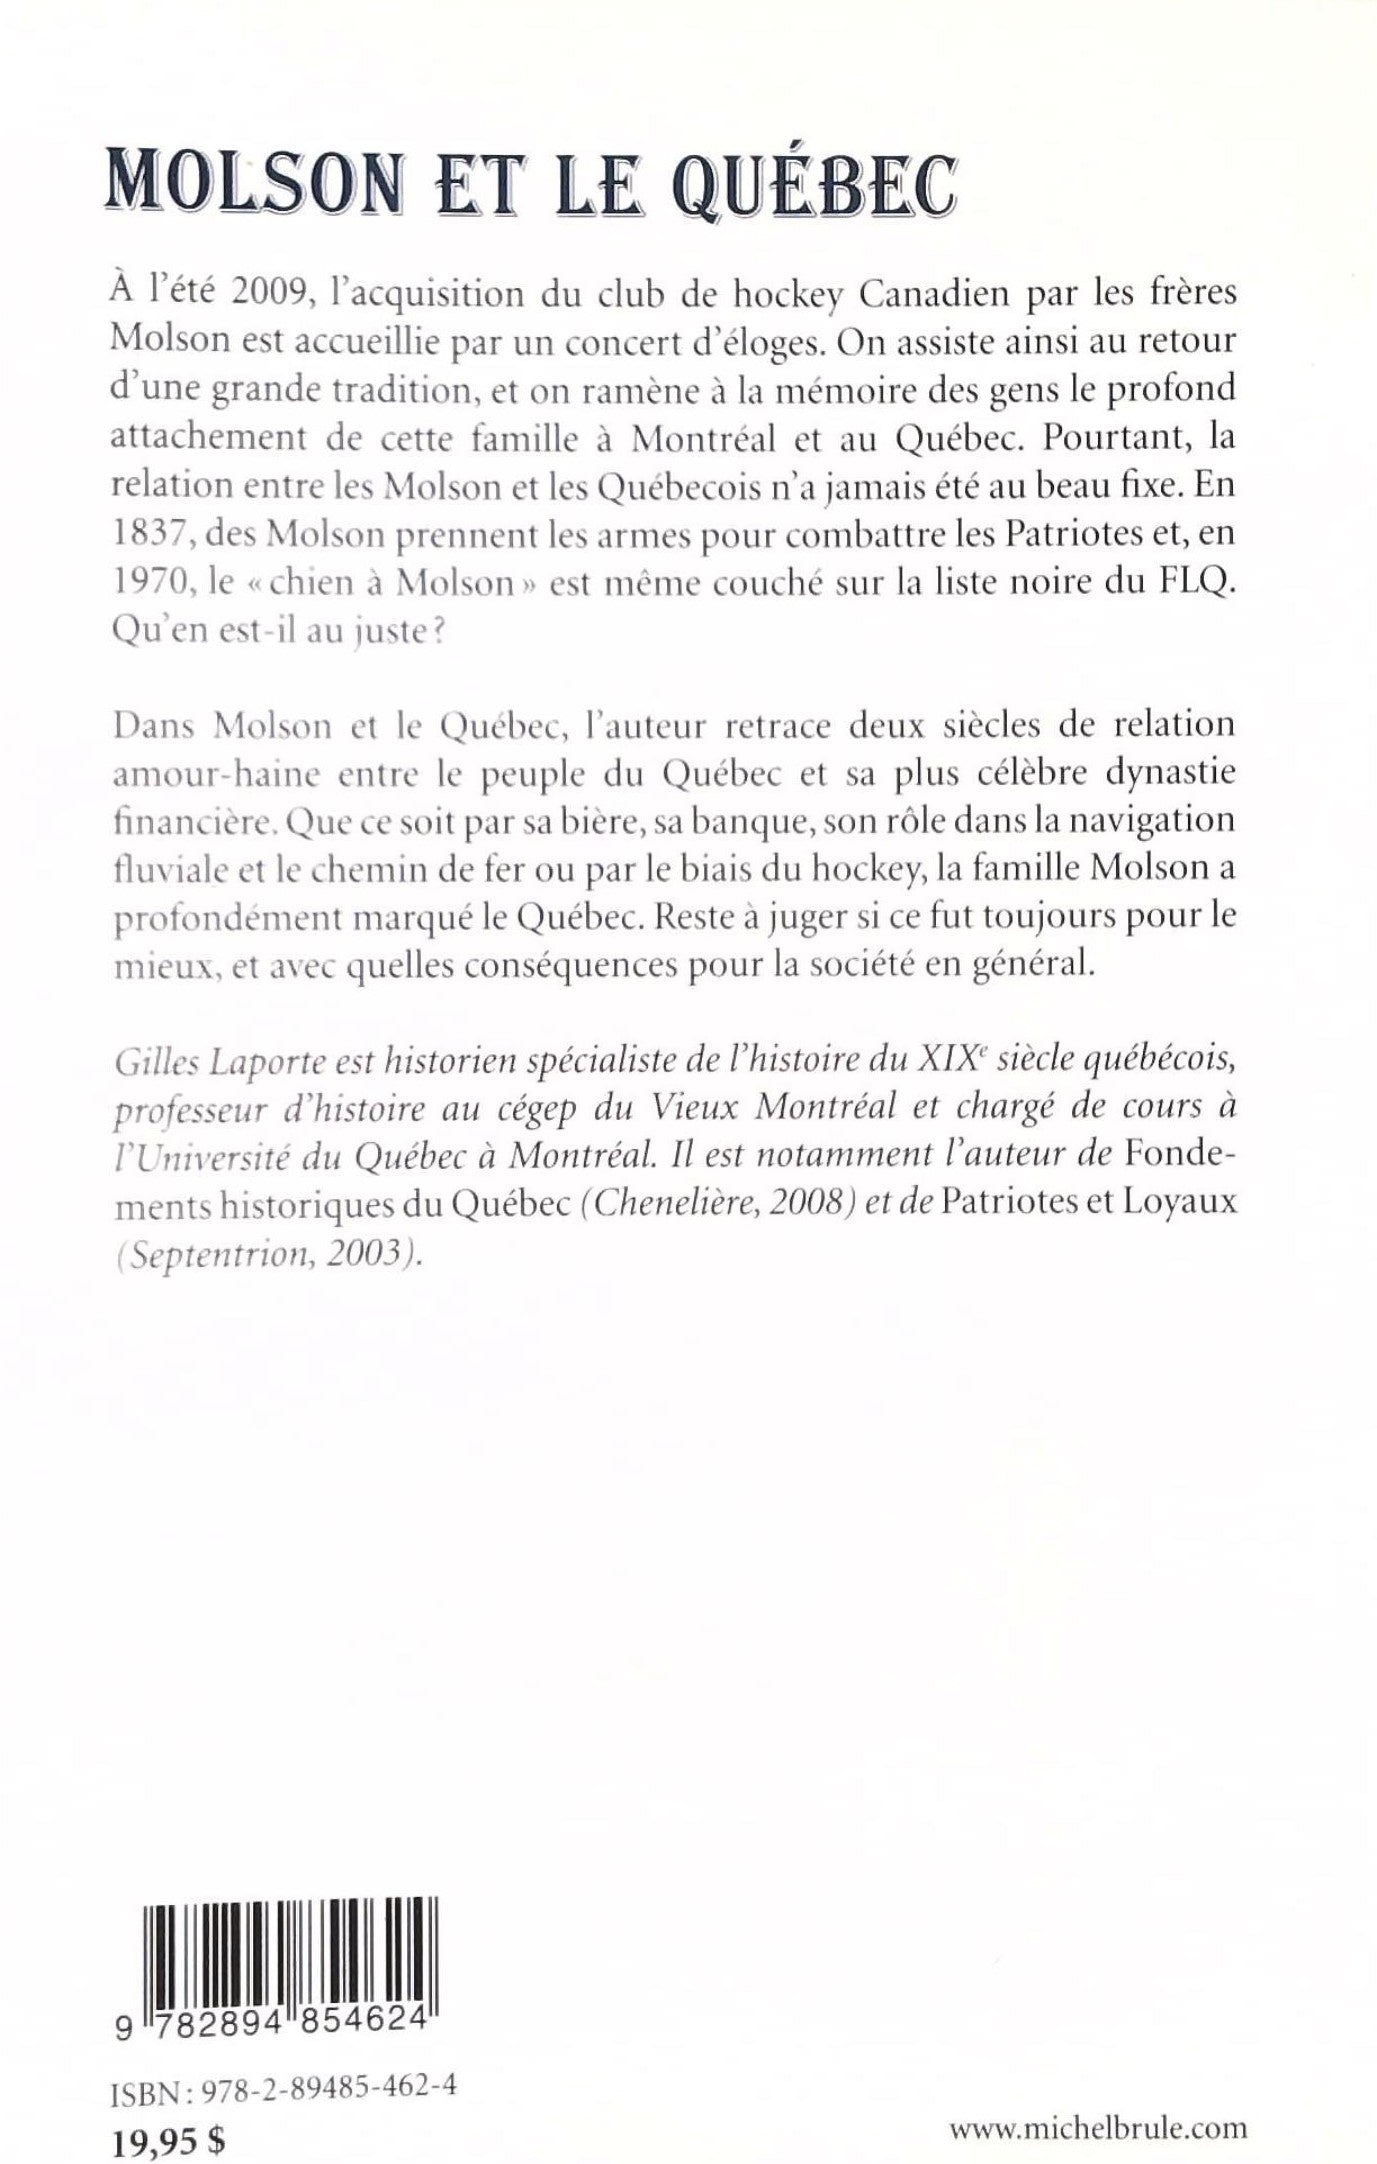 Molson et le Québec (Gilles Laporte)